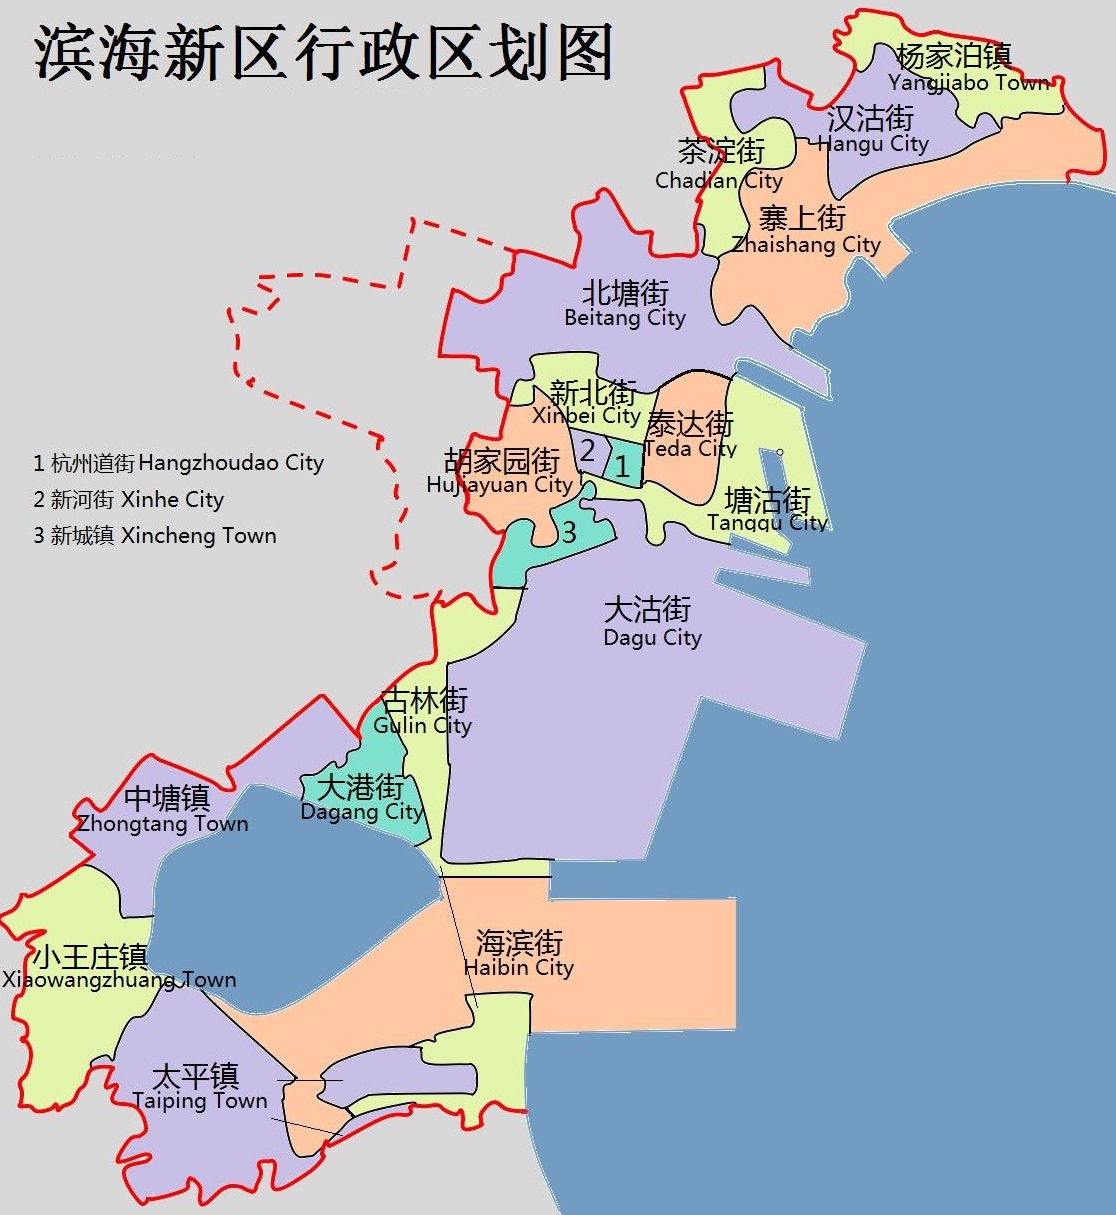 天津市再次向滨海新区下放市级权力:要激发滨海新区的